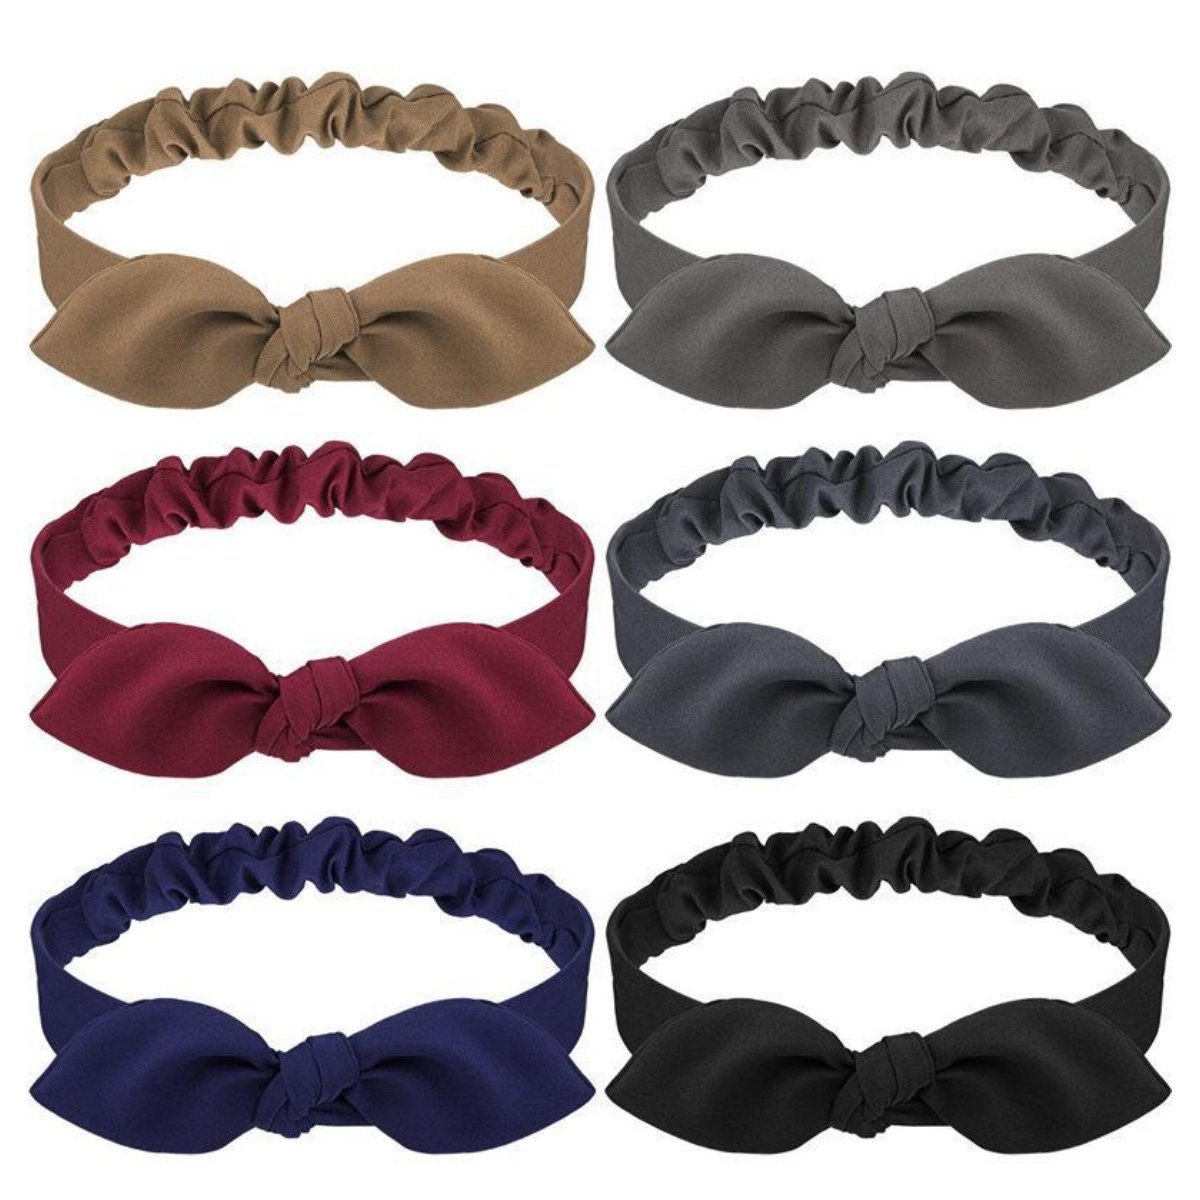 Juoungle Haarband 6 Stück Haarband,Einfarbiges Haarband mit Schleife für Damen,6 Farben